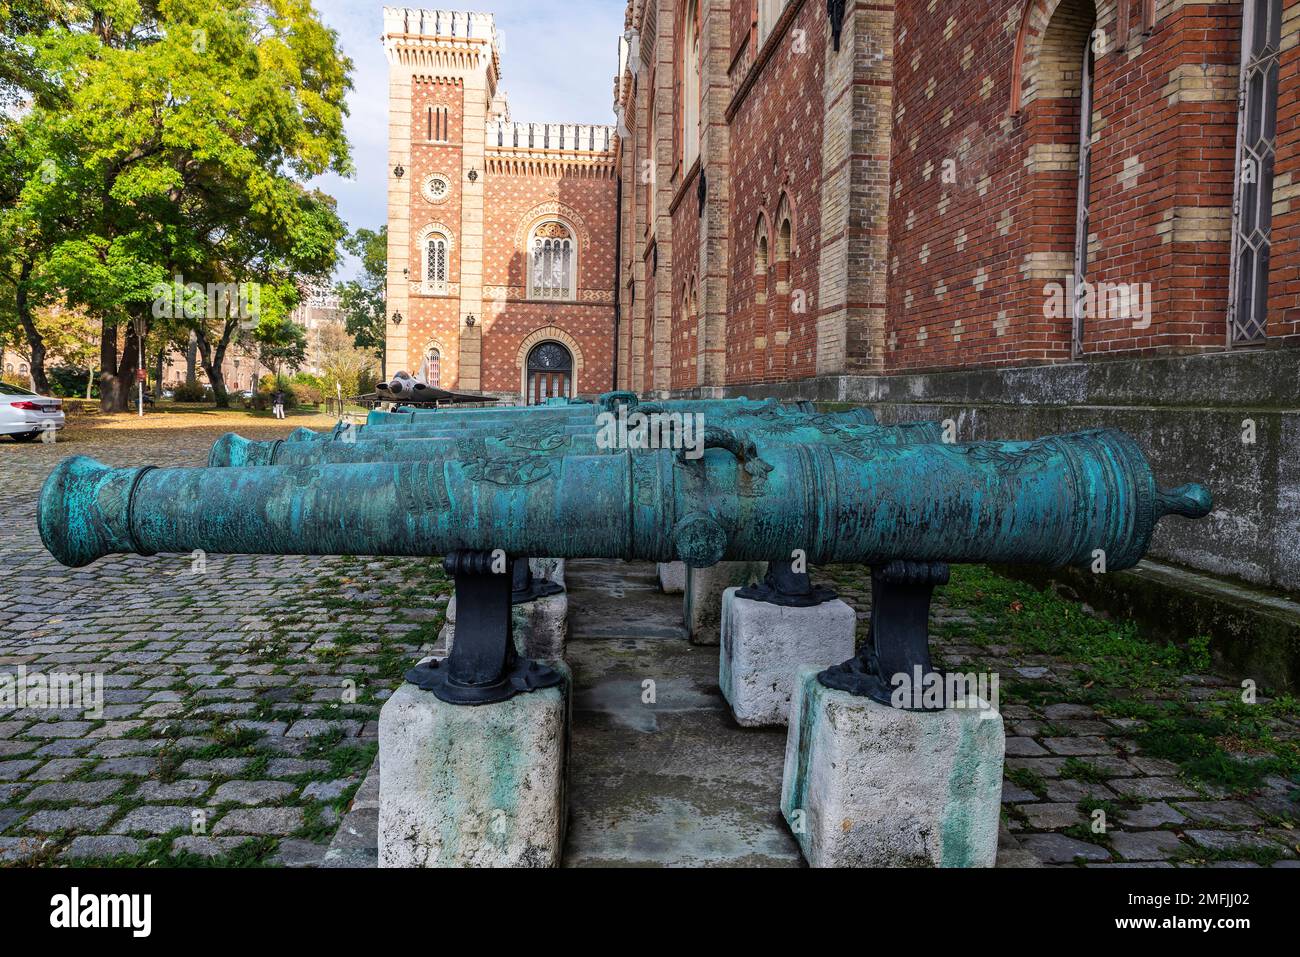 Vienne, Autriche - 16 octobre 2022 : canons du 18th siècle au Musée d'Histoire militaire de Vienne, Autriche Banque D'Images